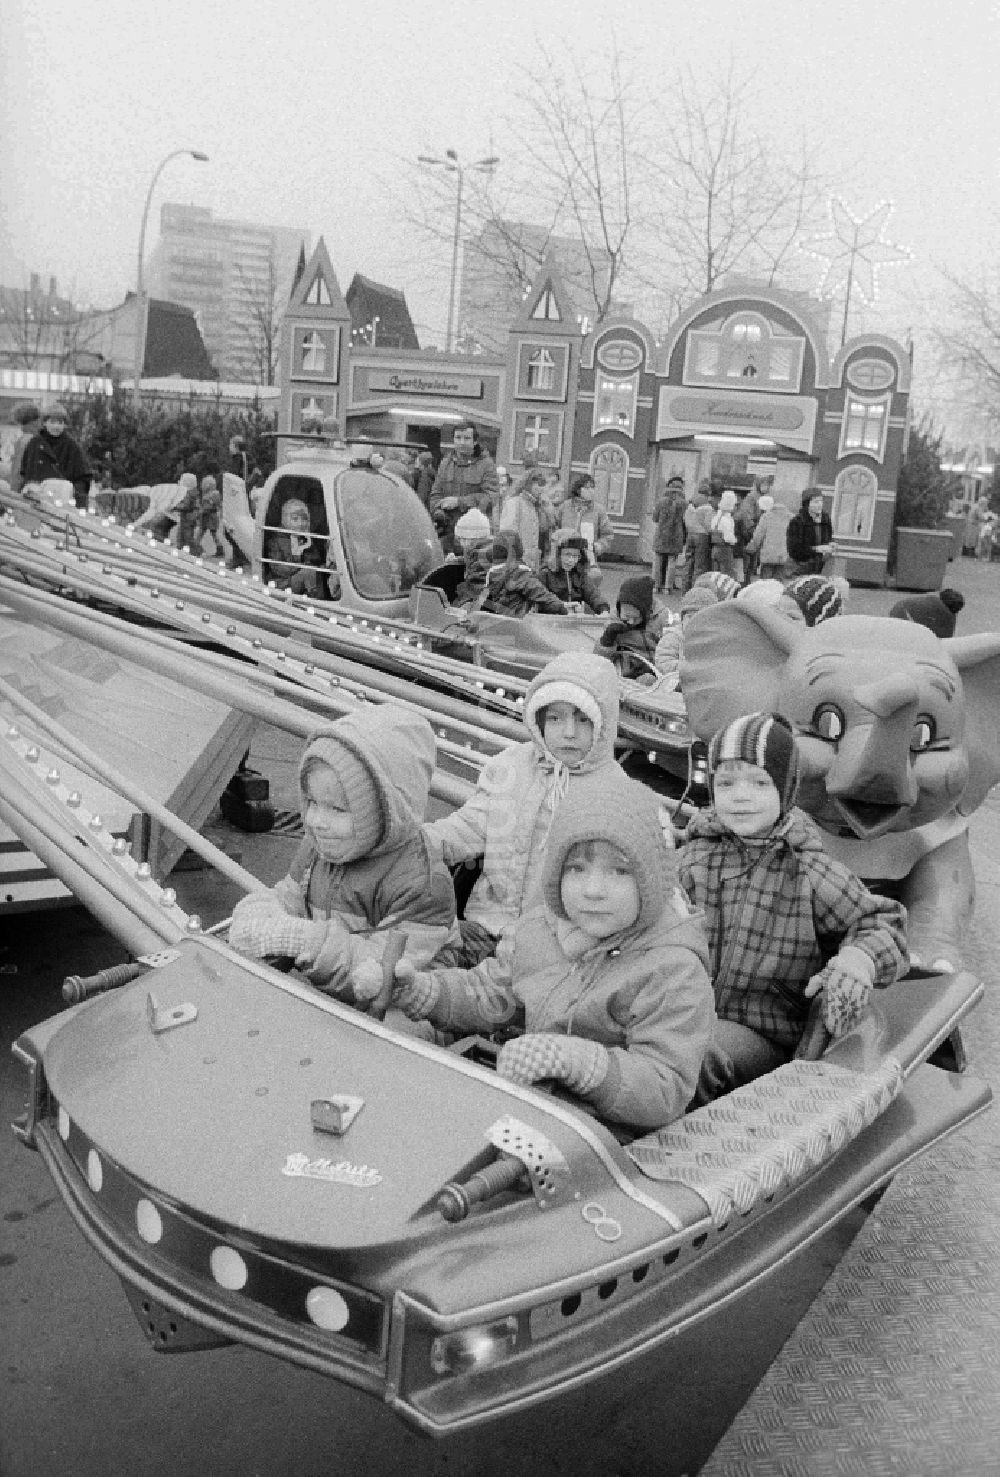 DDR-Bildarchiv: Berlin - Kinder in einem Kinderkarussell auf dem Berliner Weihnachtsmarkt in Berlin, der ehemaligen Hauptstadt der DDR, Deutsche Demokratische Republik